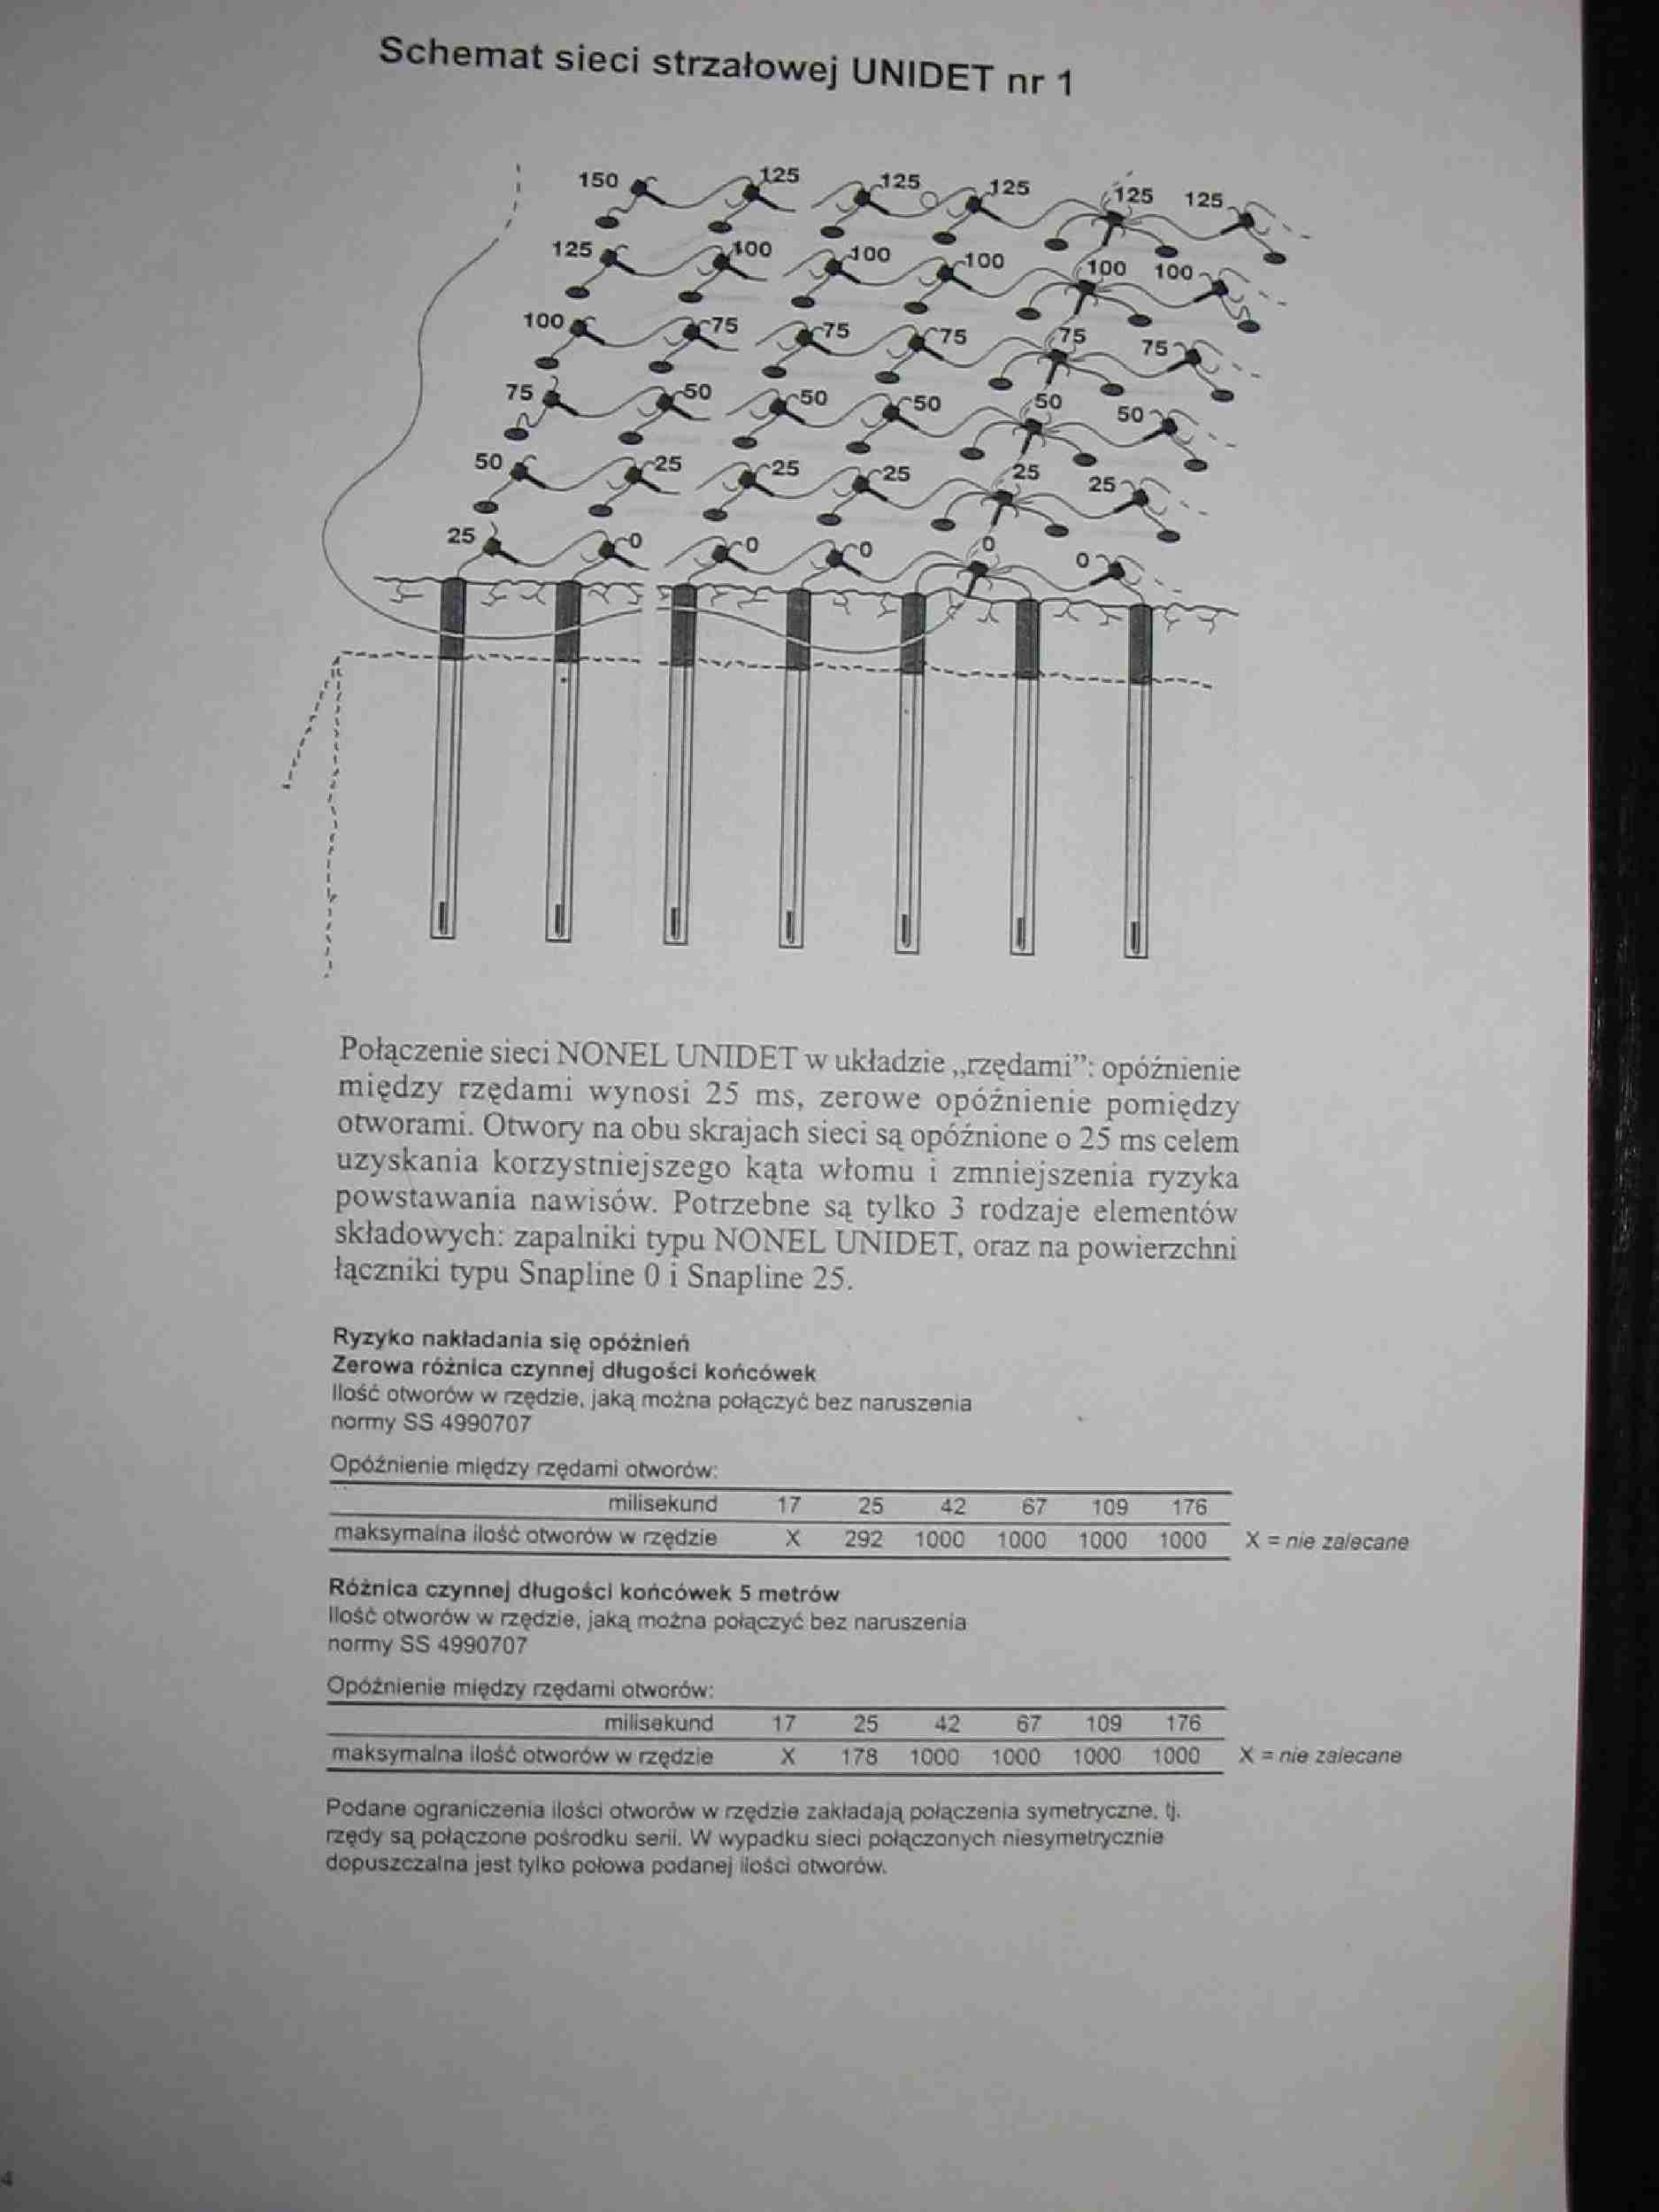 Schematy sieci strzałowej unidet - projekt z techniki strzelniczej  - strona 1